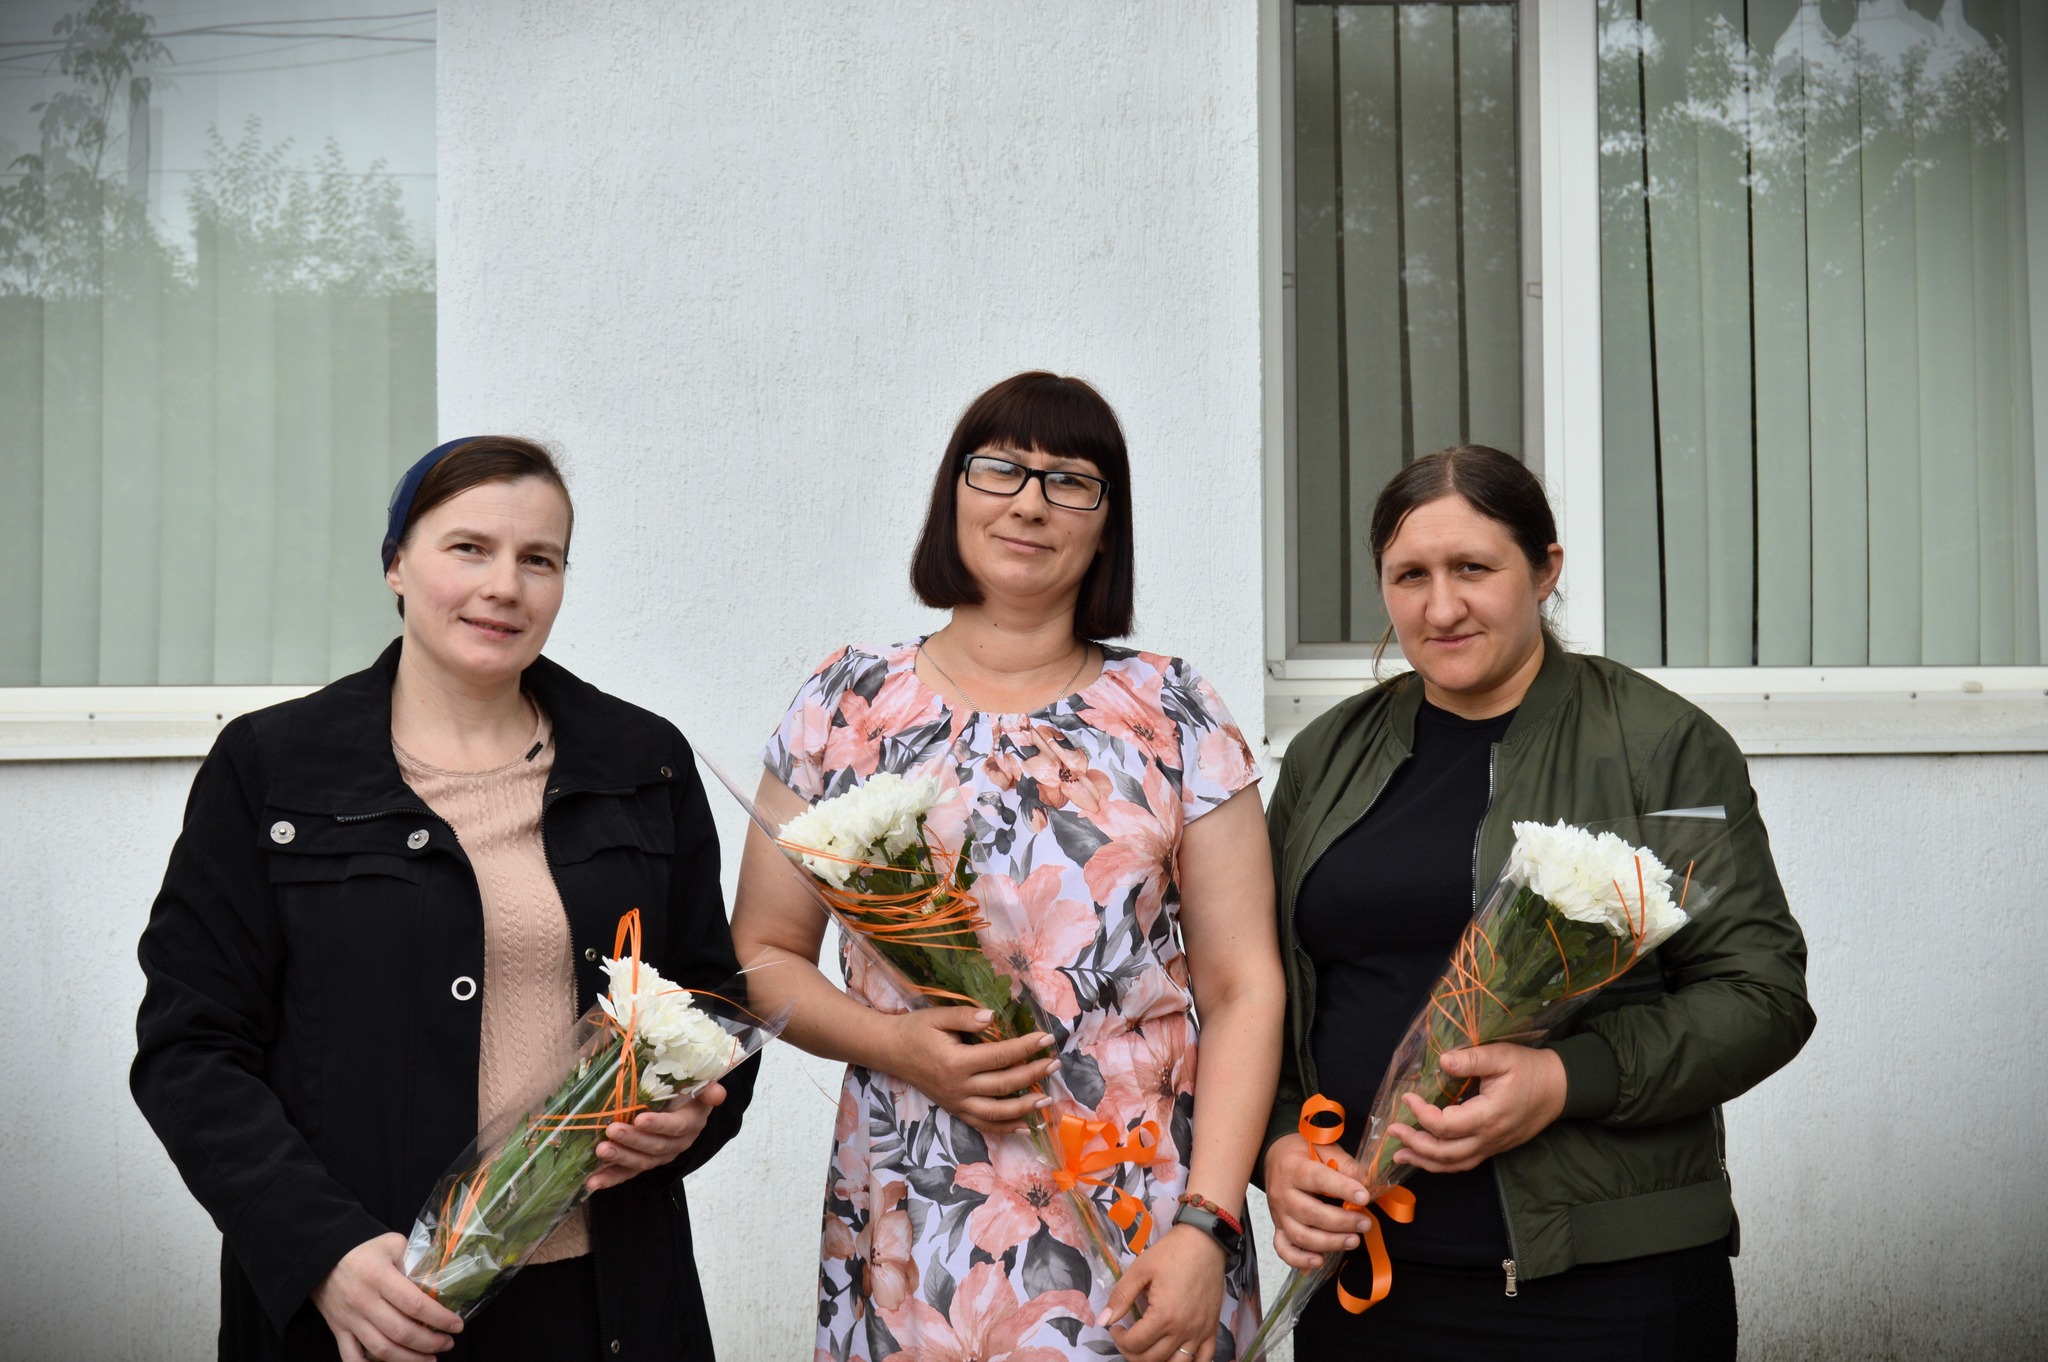 У Білгород-Дністровському районі нагородили мешканок громад почесним званням «Мати-героїня»